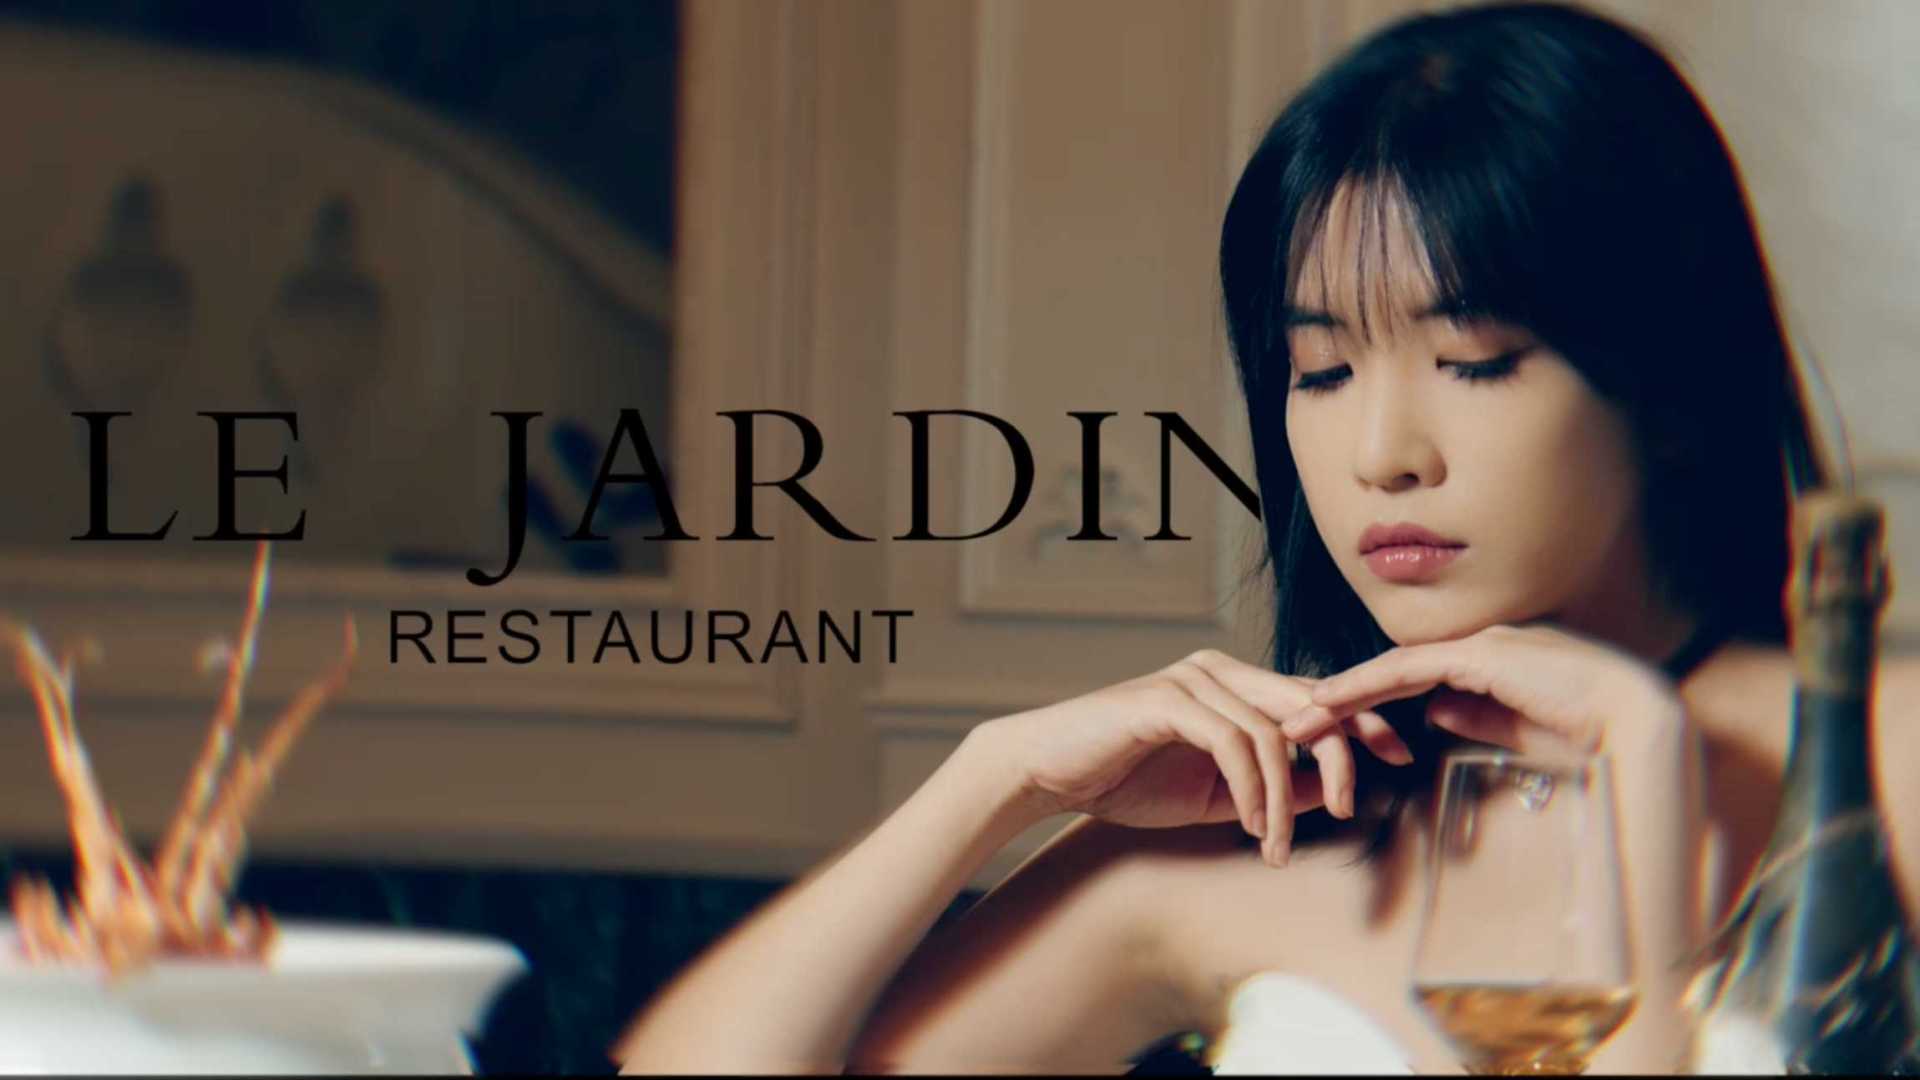 【LE JARDIN】昆山雅庭私厨餐厅概念宣传片